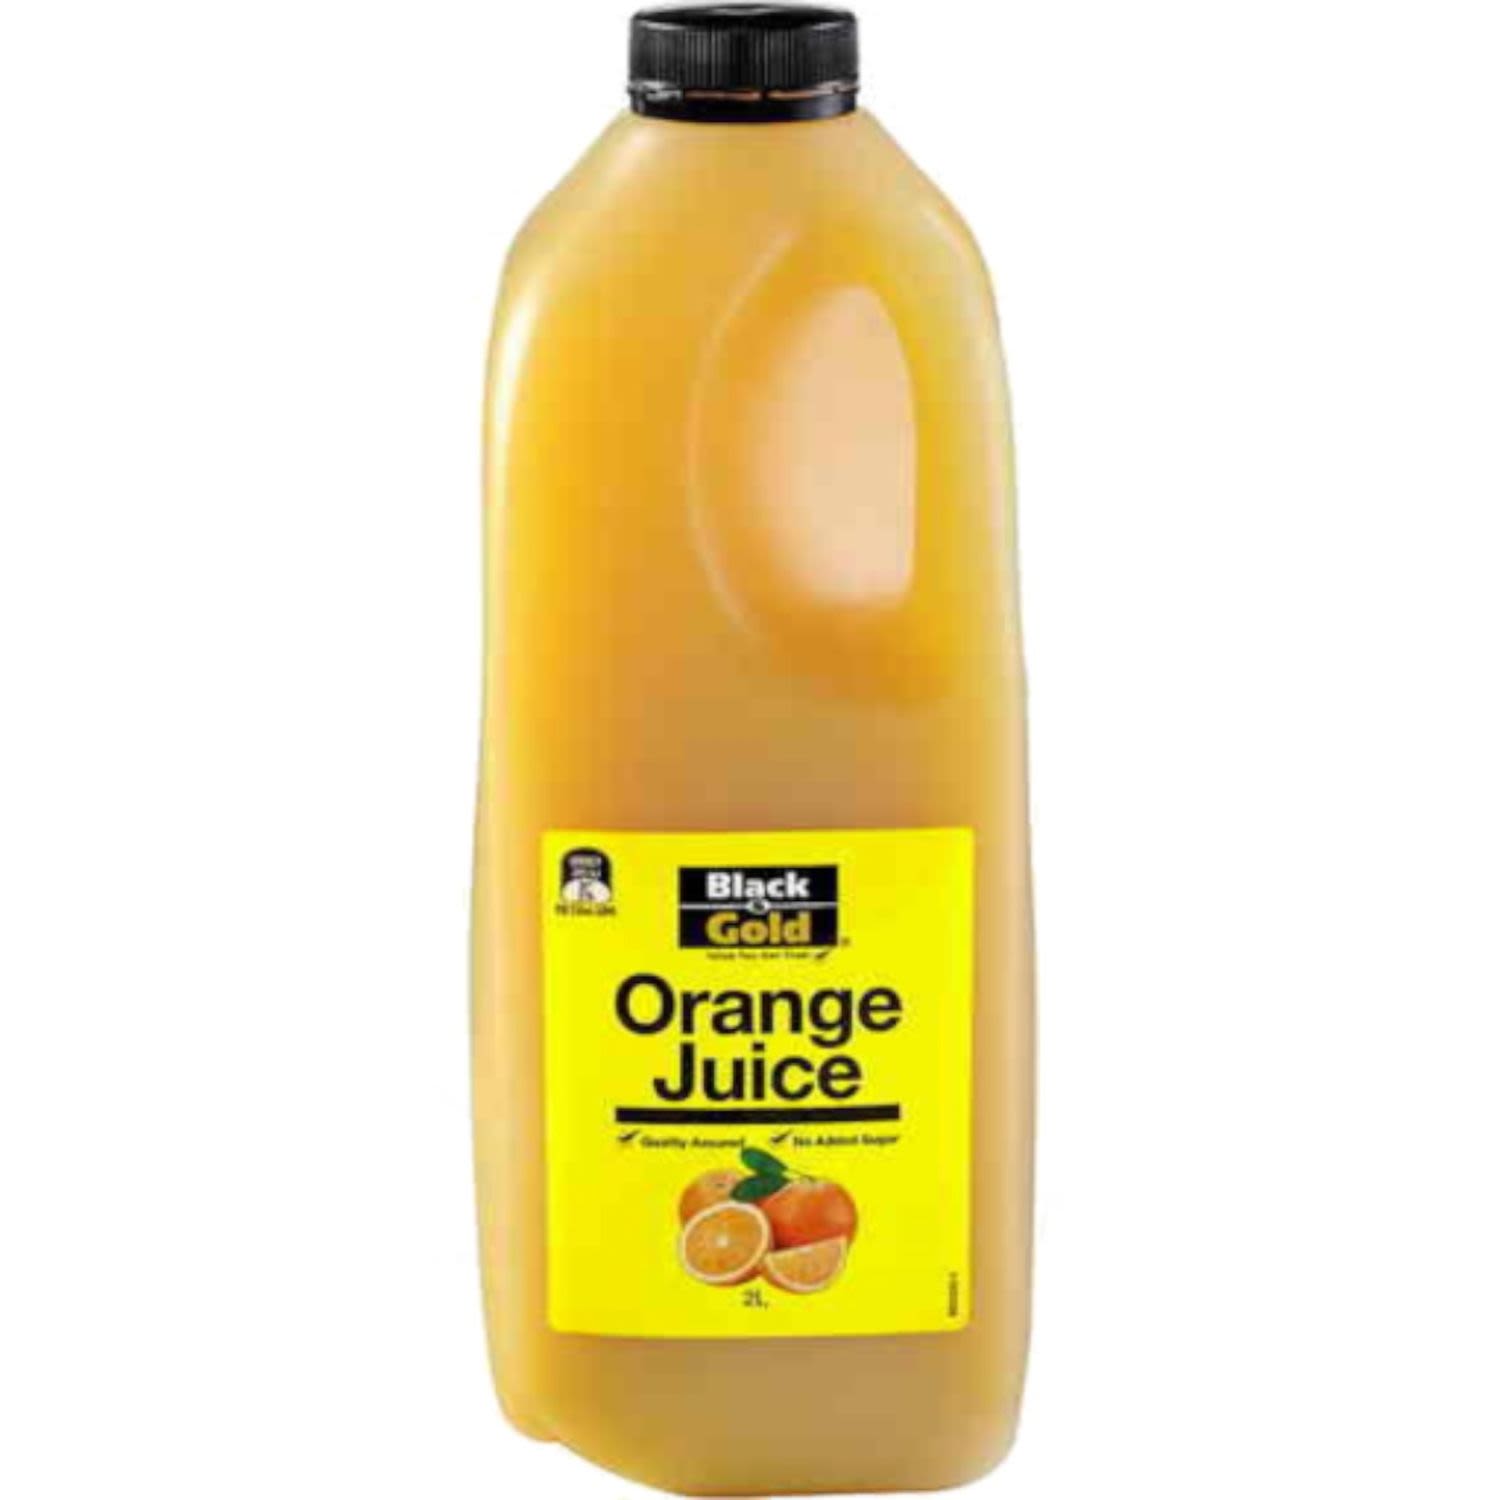 Black & Gold Juice Orange, 2 Litre